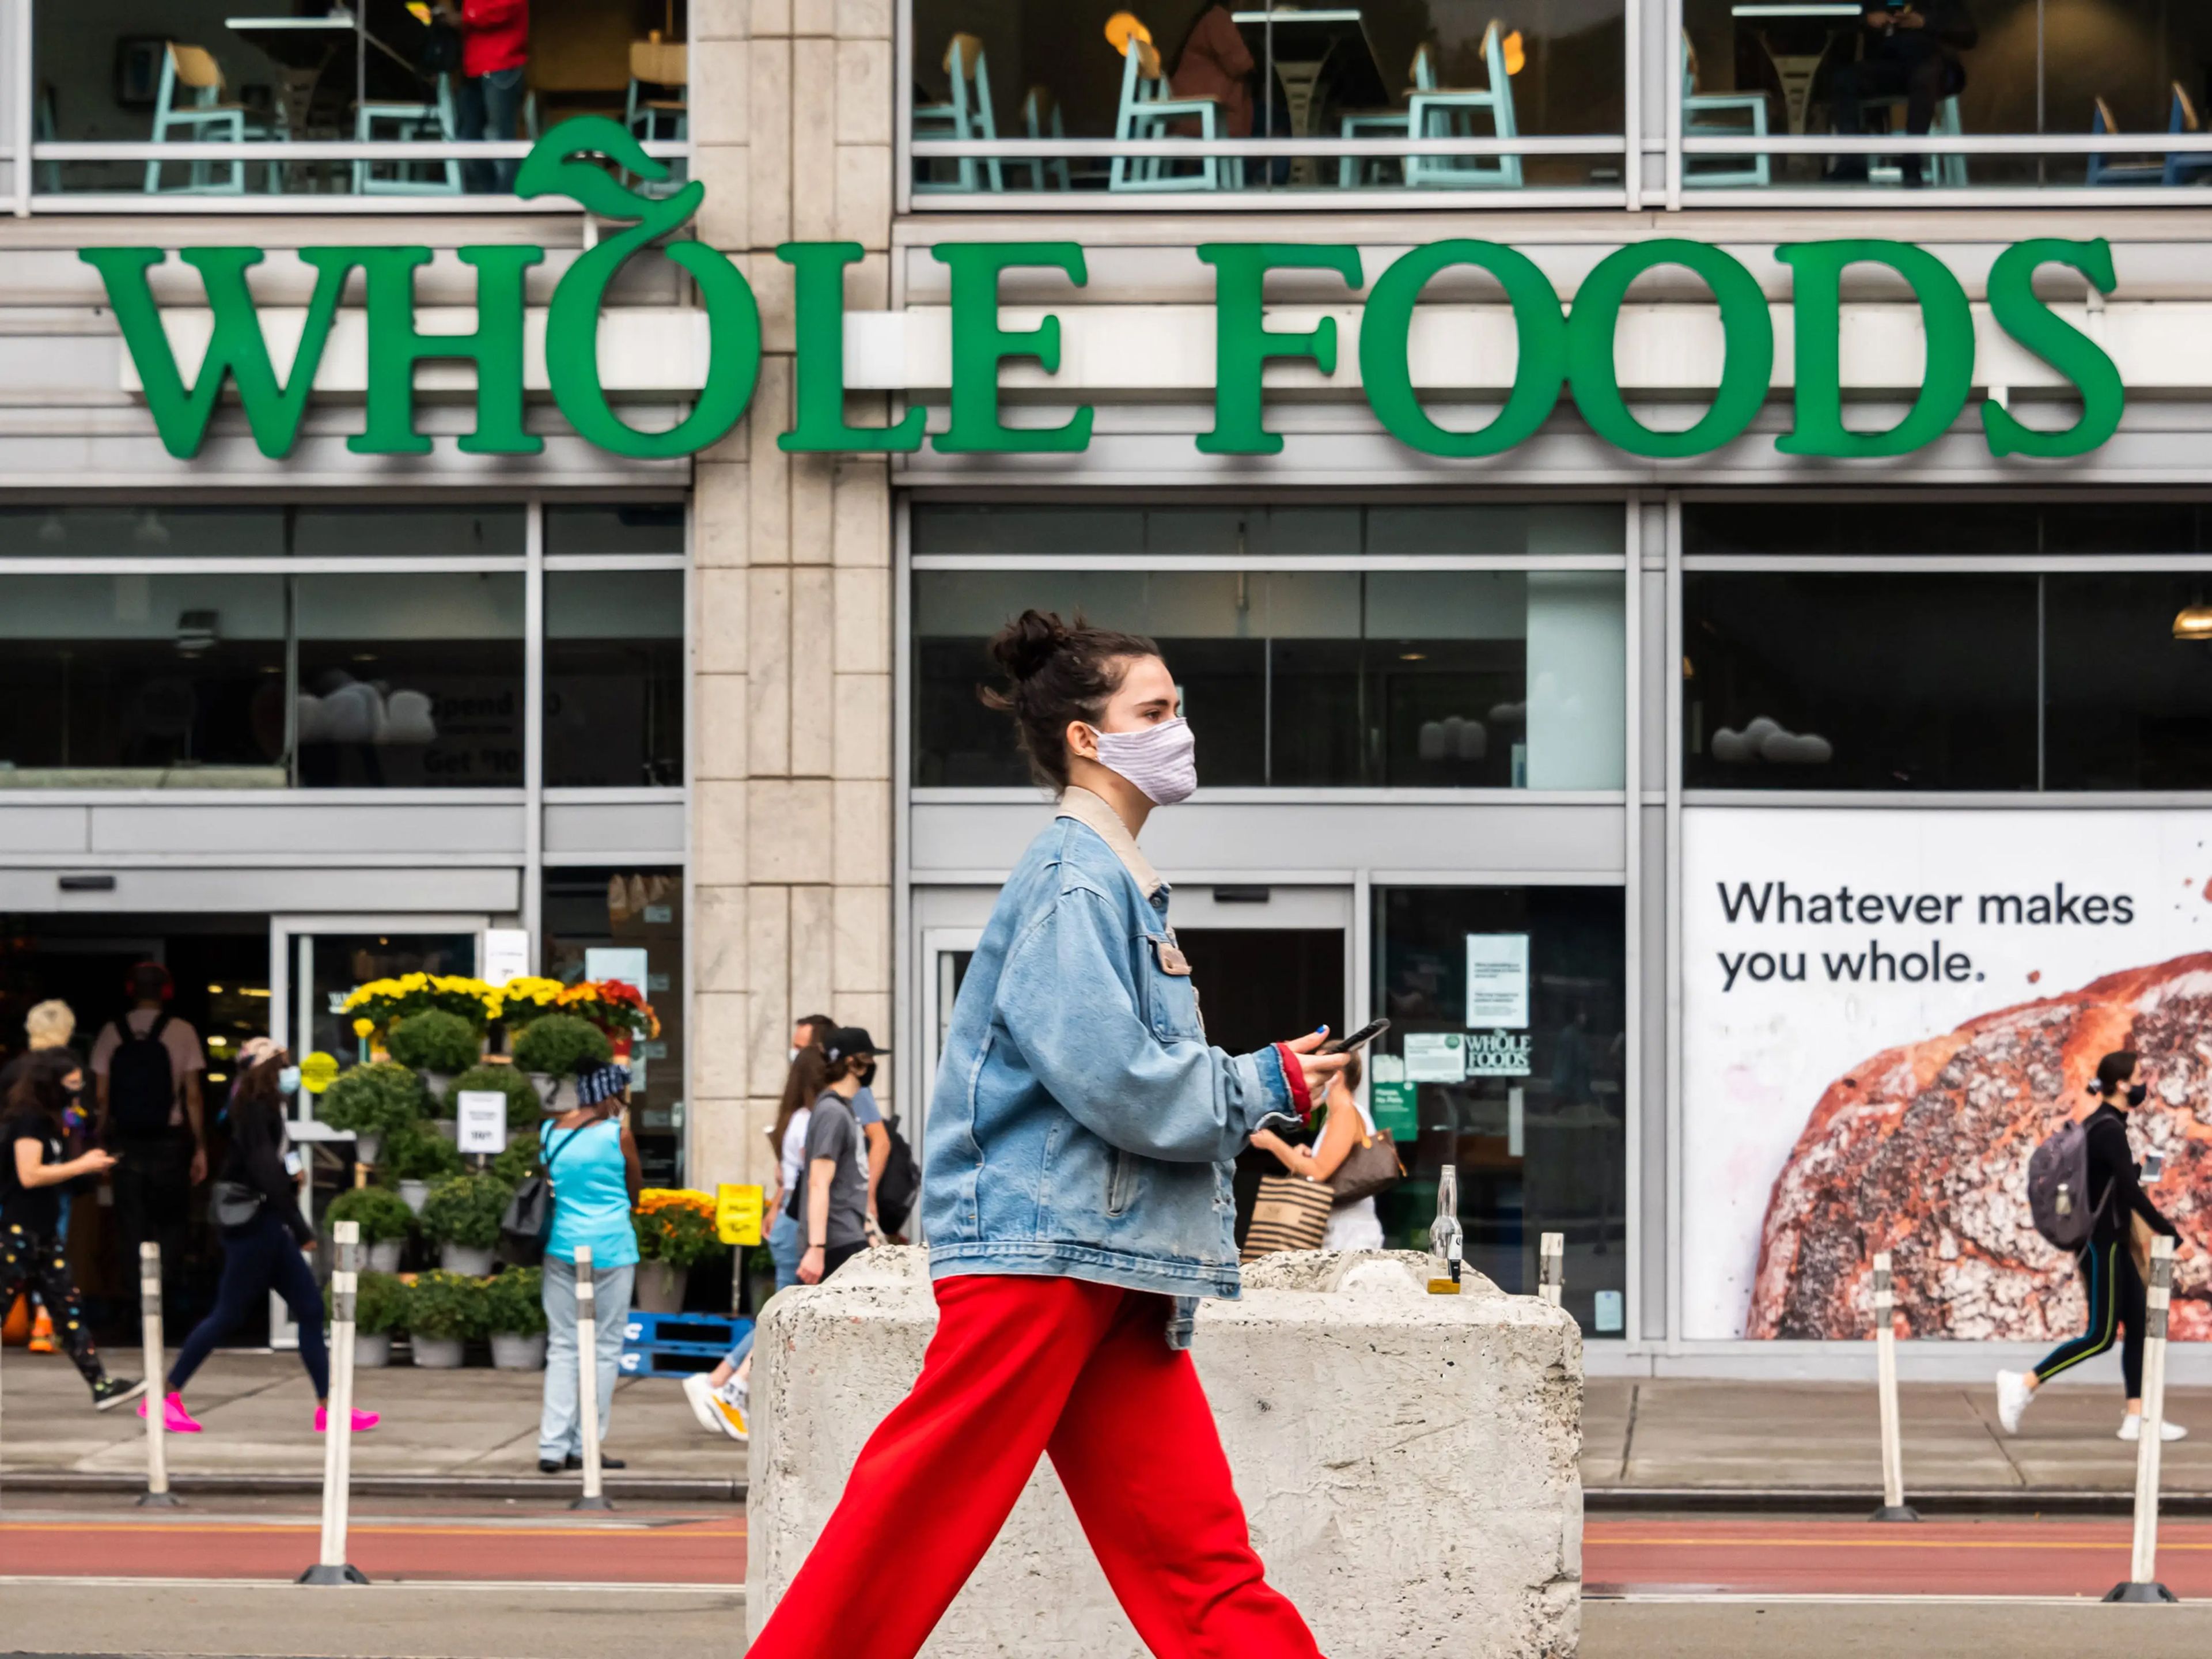 Amazon ha considerado instalar farmacias dentro de sus locales de Whole Foods y lanzar una tienda al estilo de Walgreens.